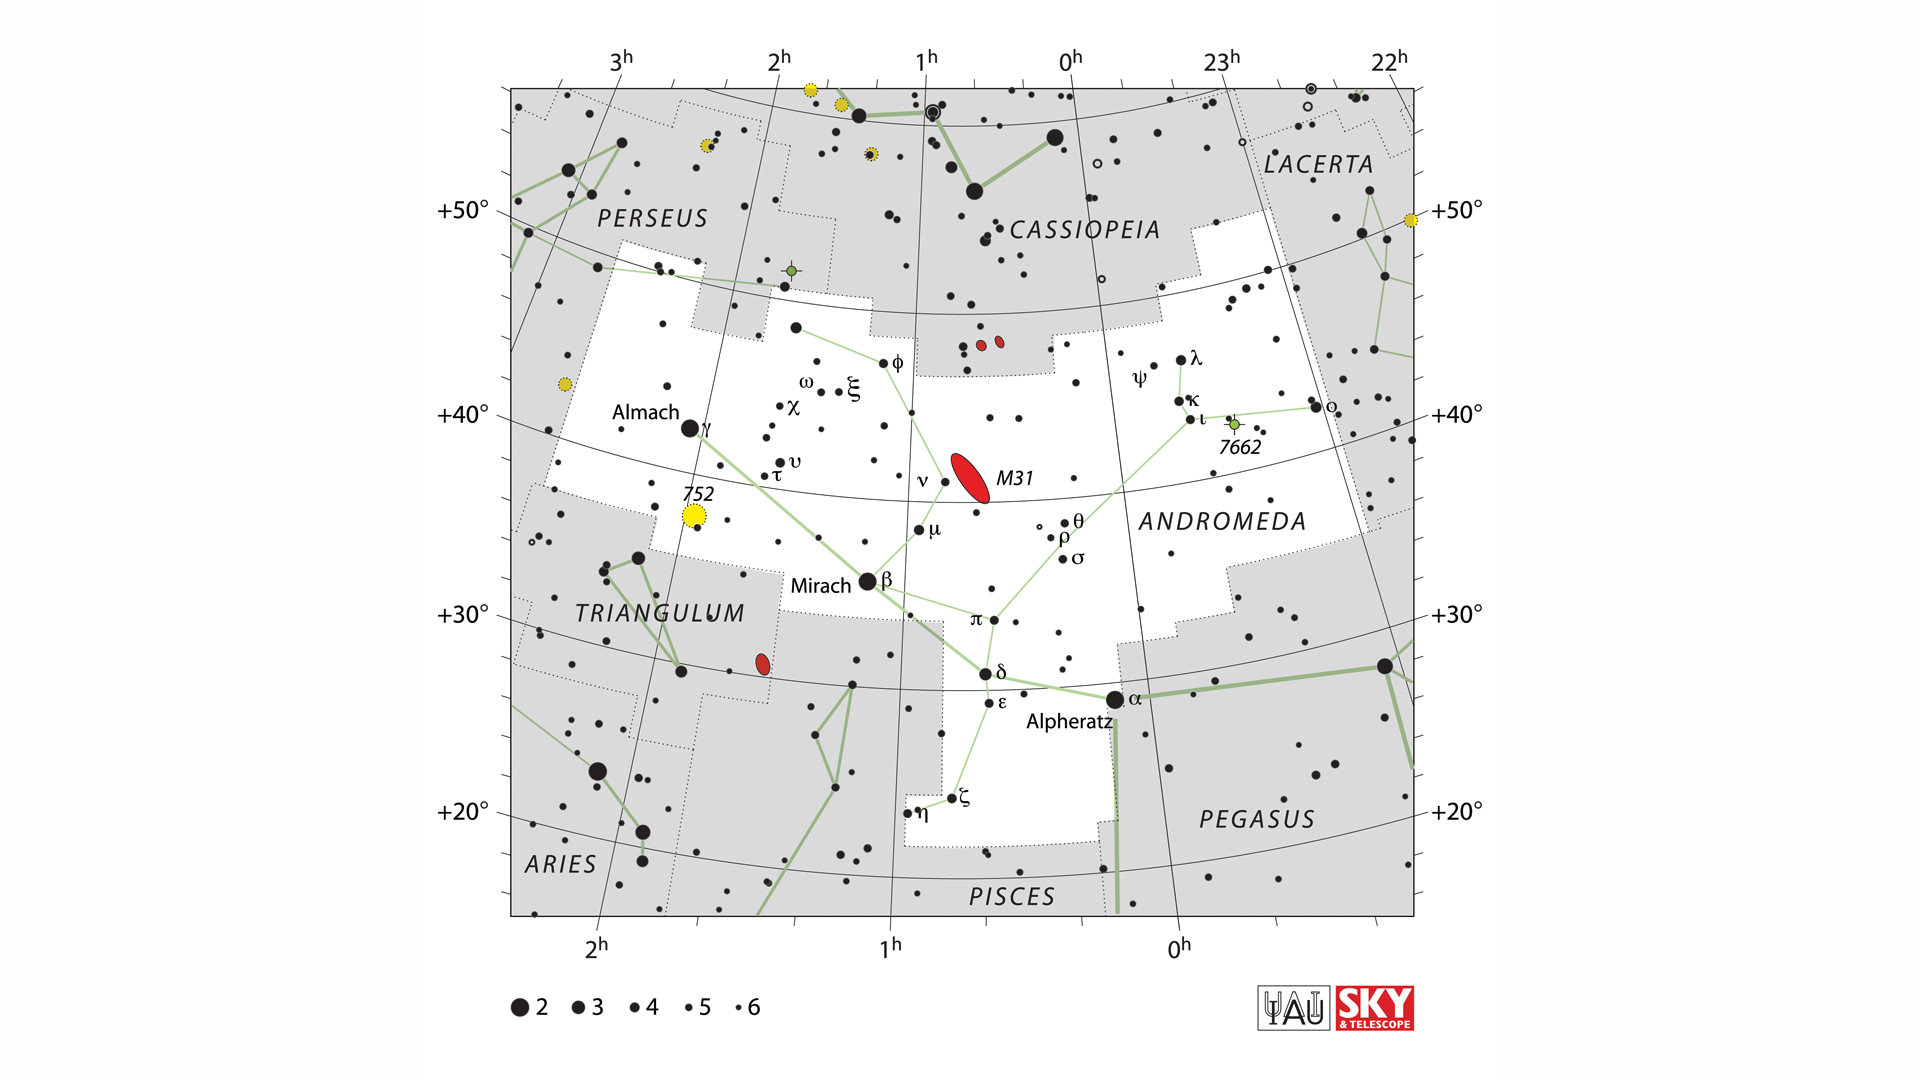 La posición de la constelación de Andrómeda entre las otras constelaciones que llevan el nombre de personajes asociados con el mito de Perseo.